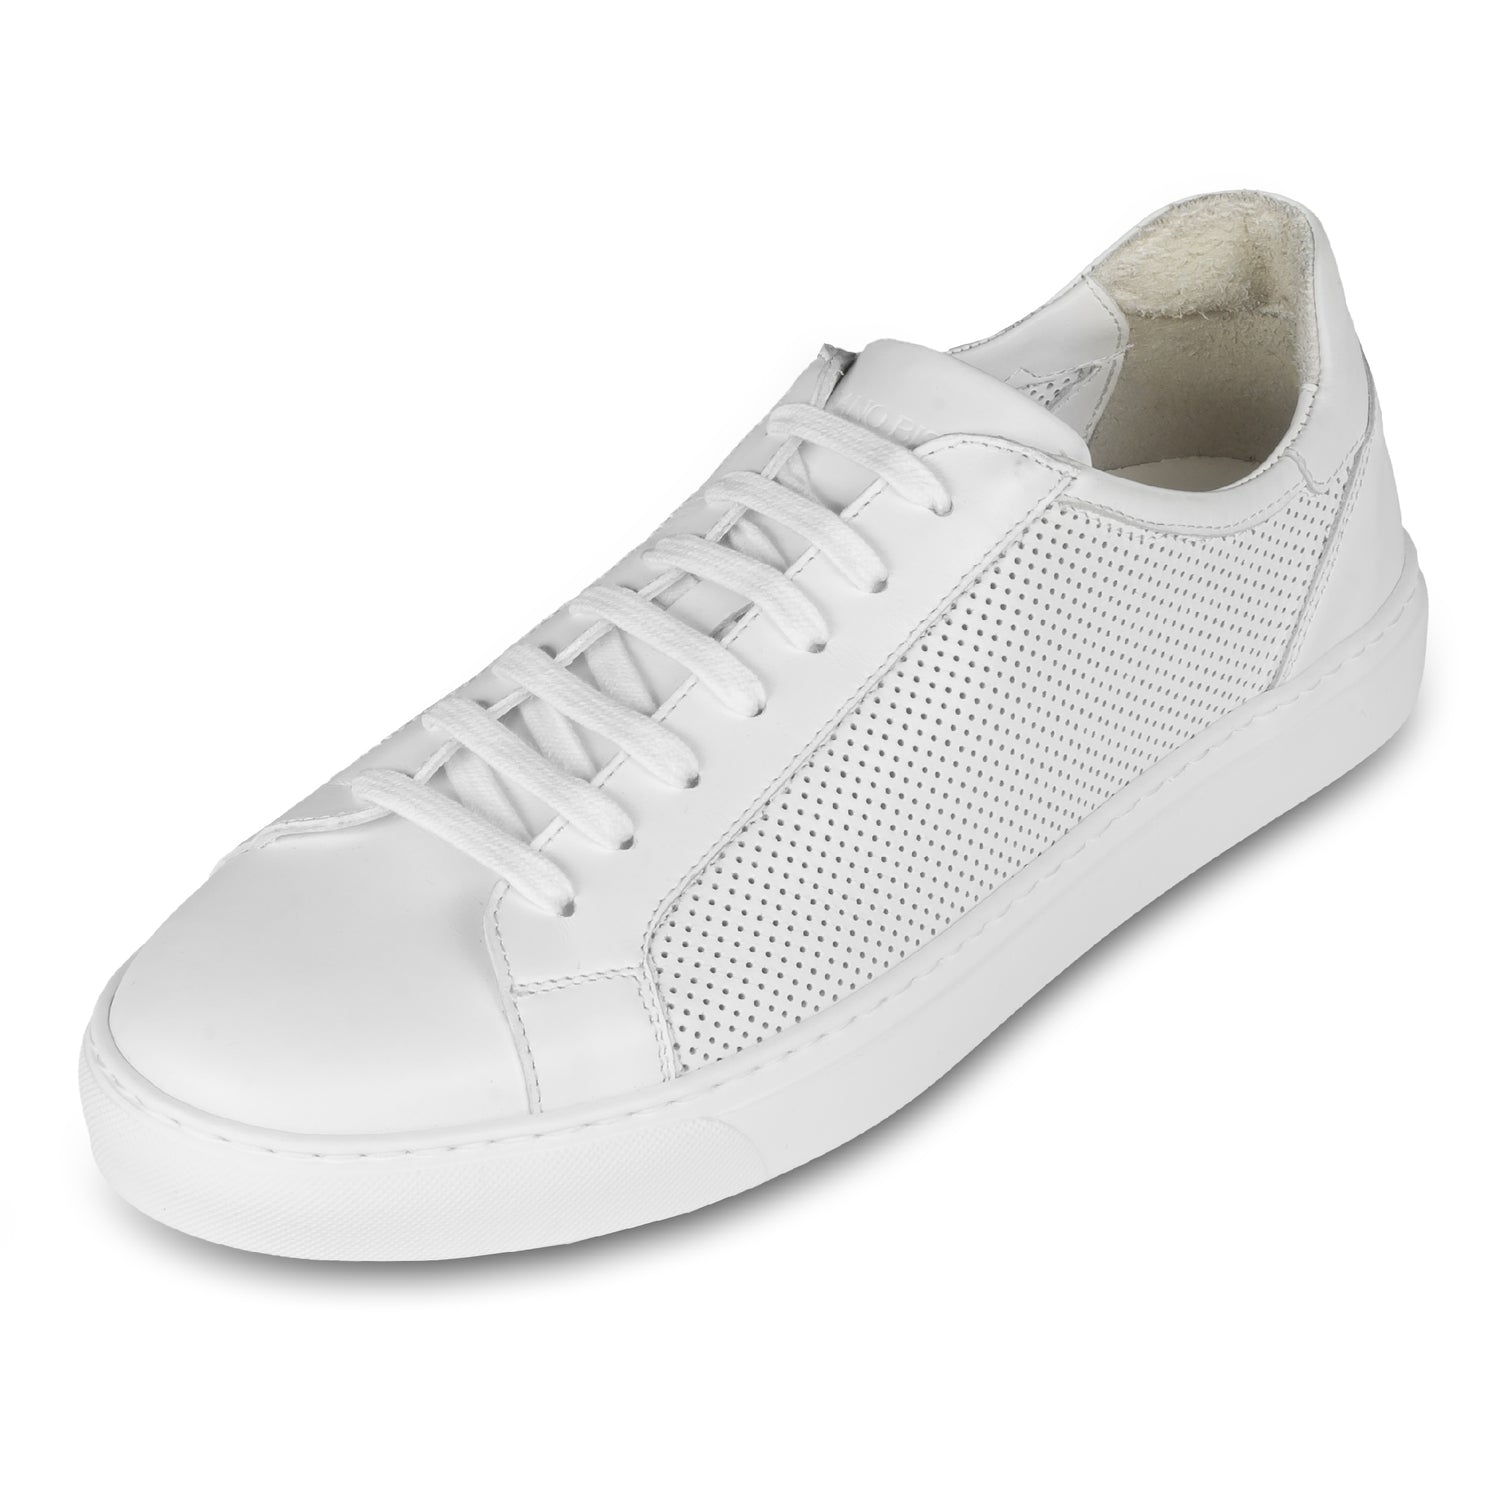 Rossano Bisconti – Italienische Herren Sneaker in weiß aus. Aus Kalbsleder sommerlich perforiert, mit weißer Sohle. Handgefertigt. Schräge Ansicht linker Schuh.